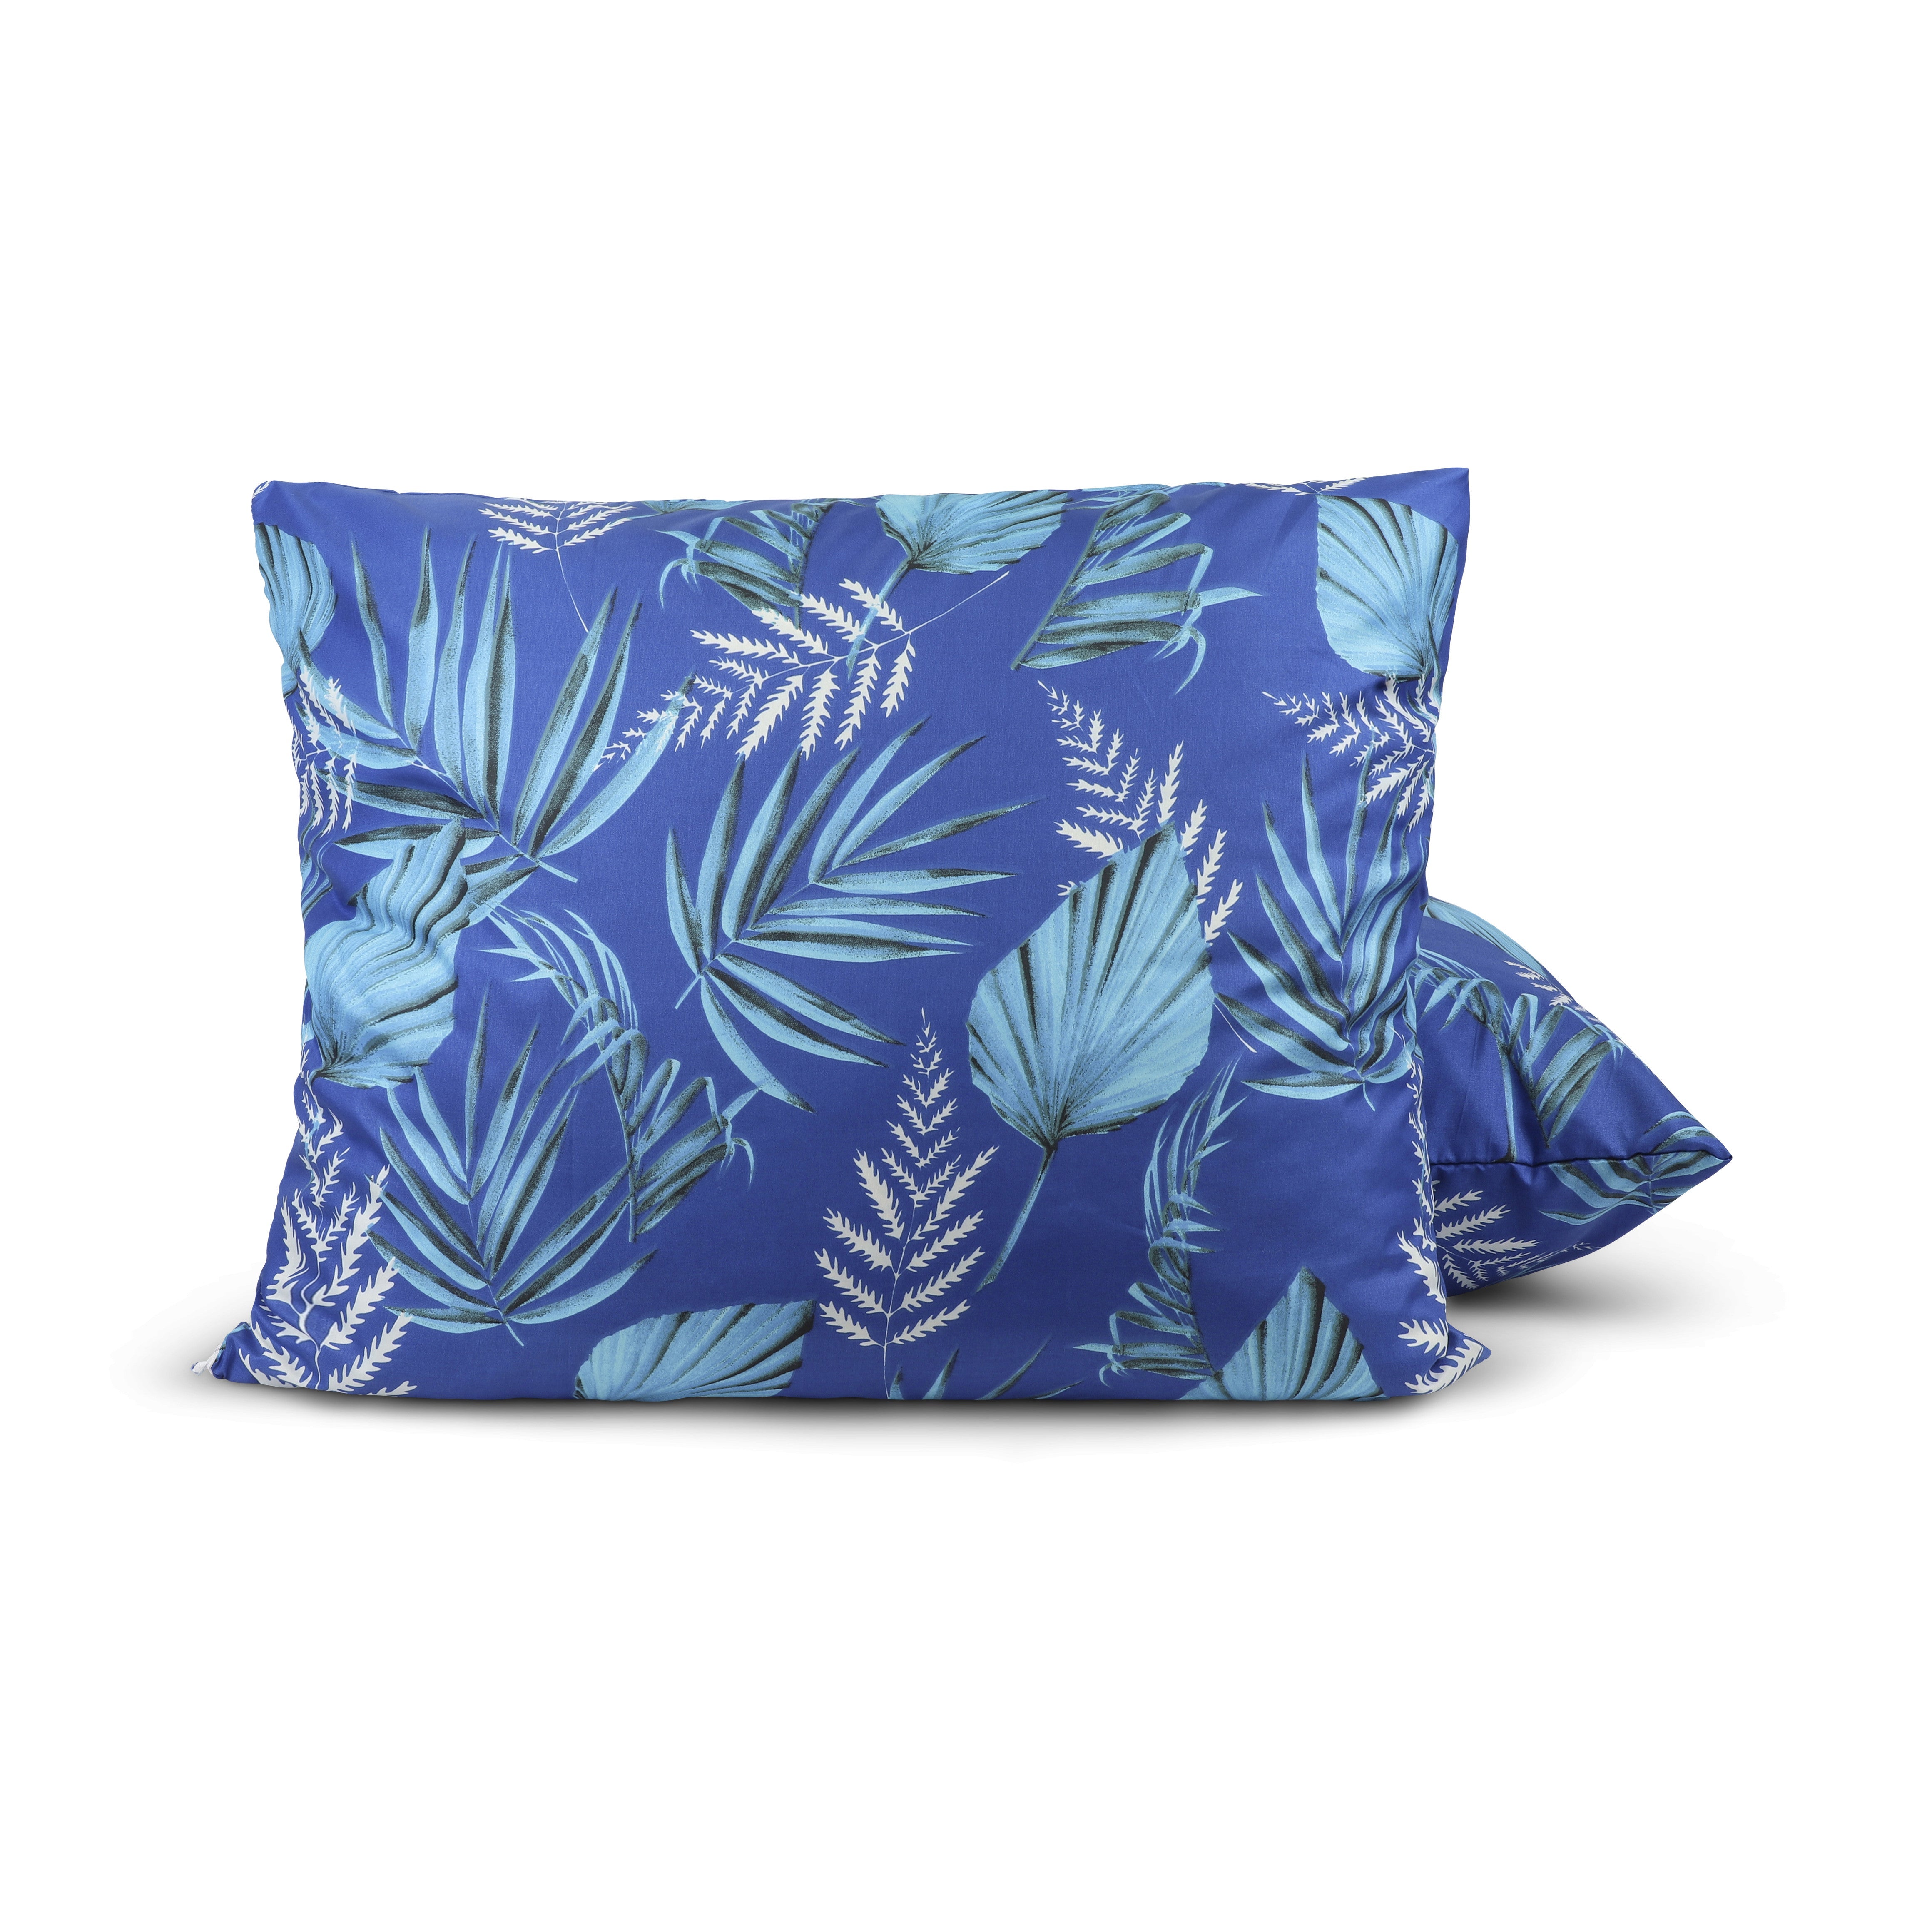 HappyDuvet | Blue leaves pillowcase set 2 pieces - 60x70cm - 100% Microfibre